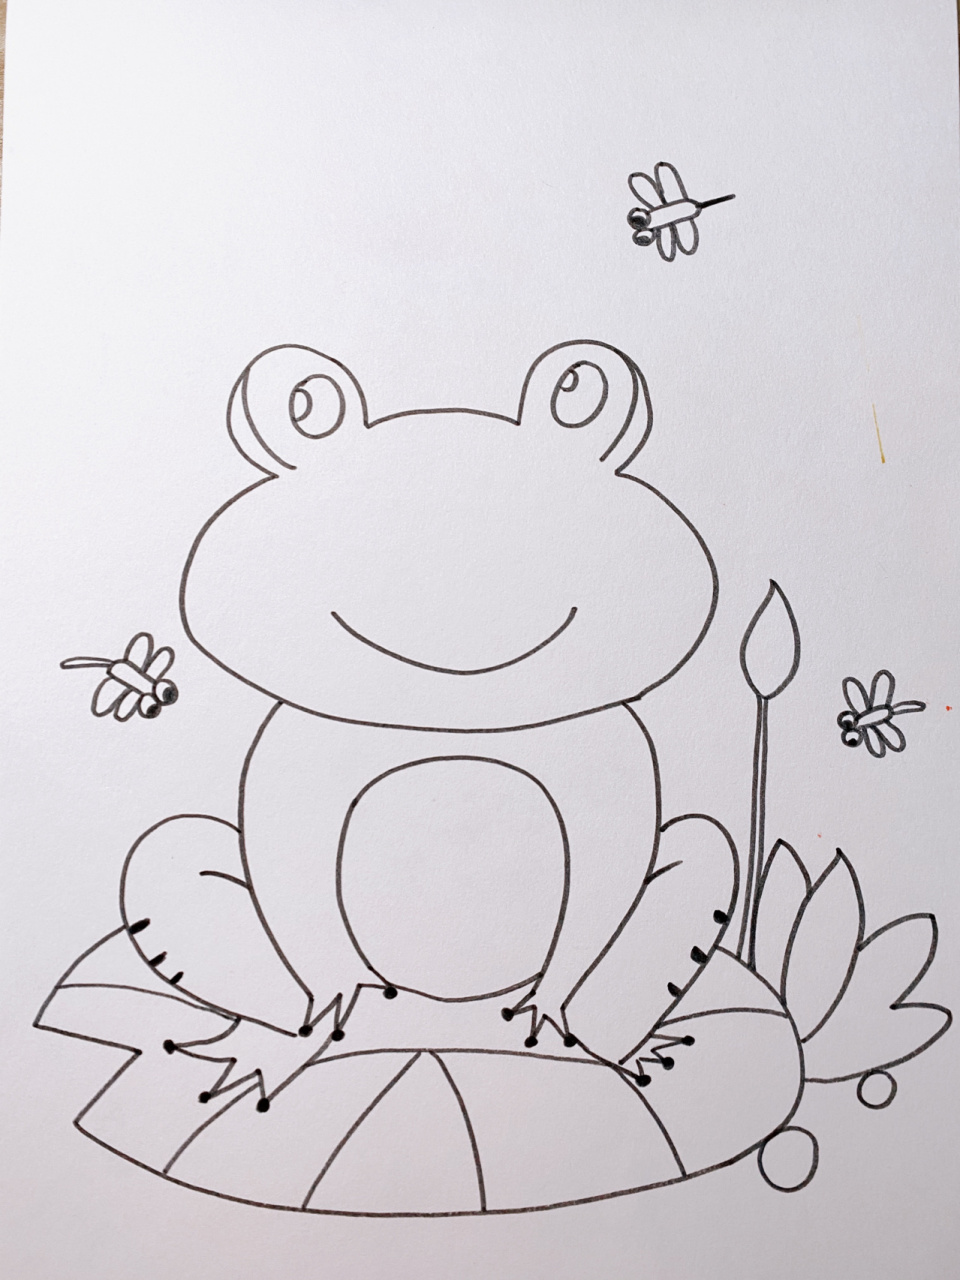 荷叶上的青蛙简笔画图片